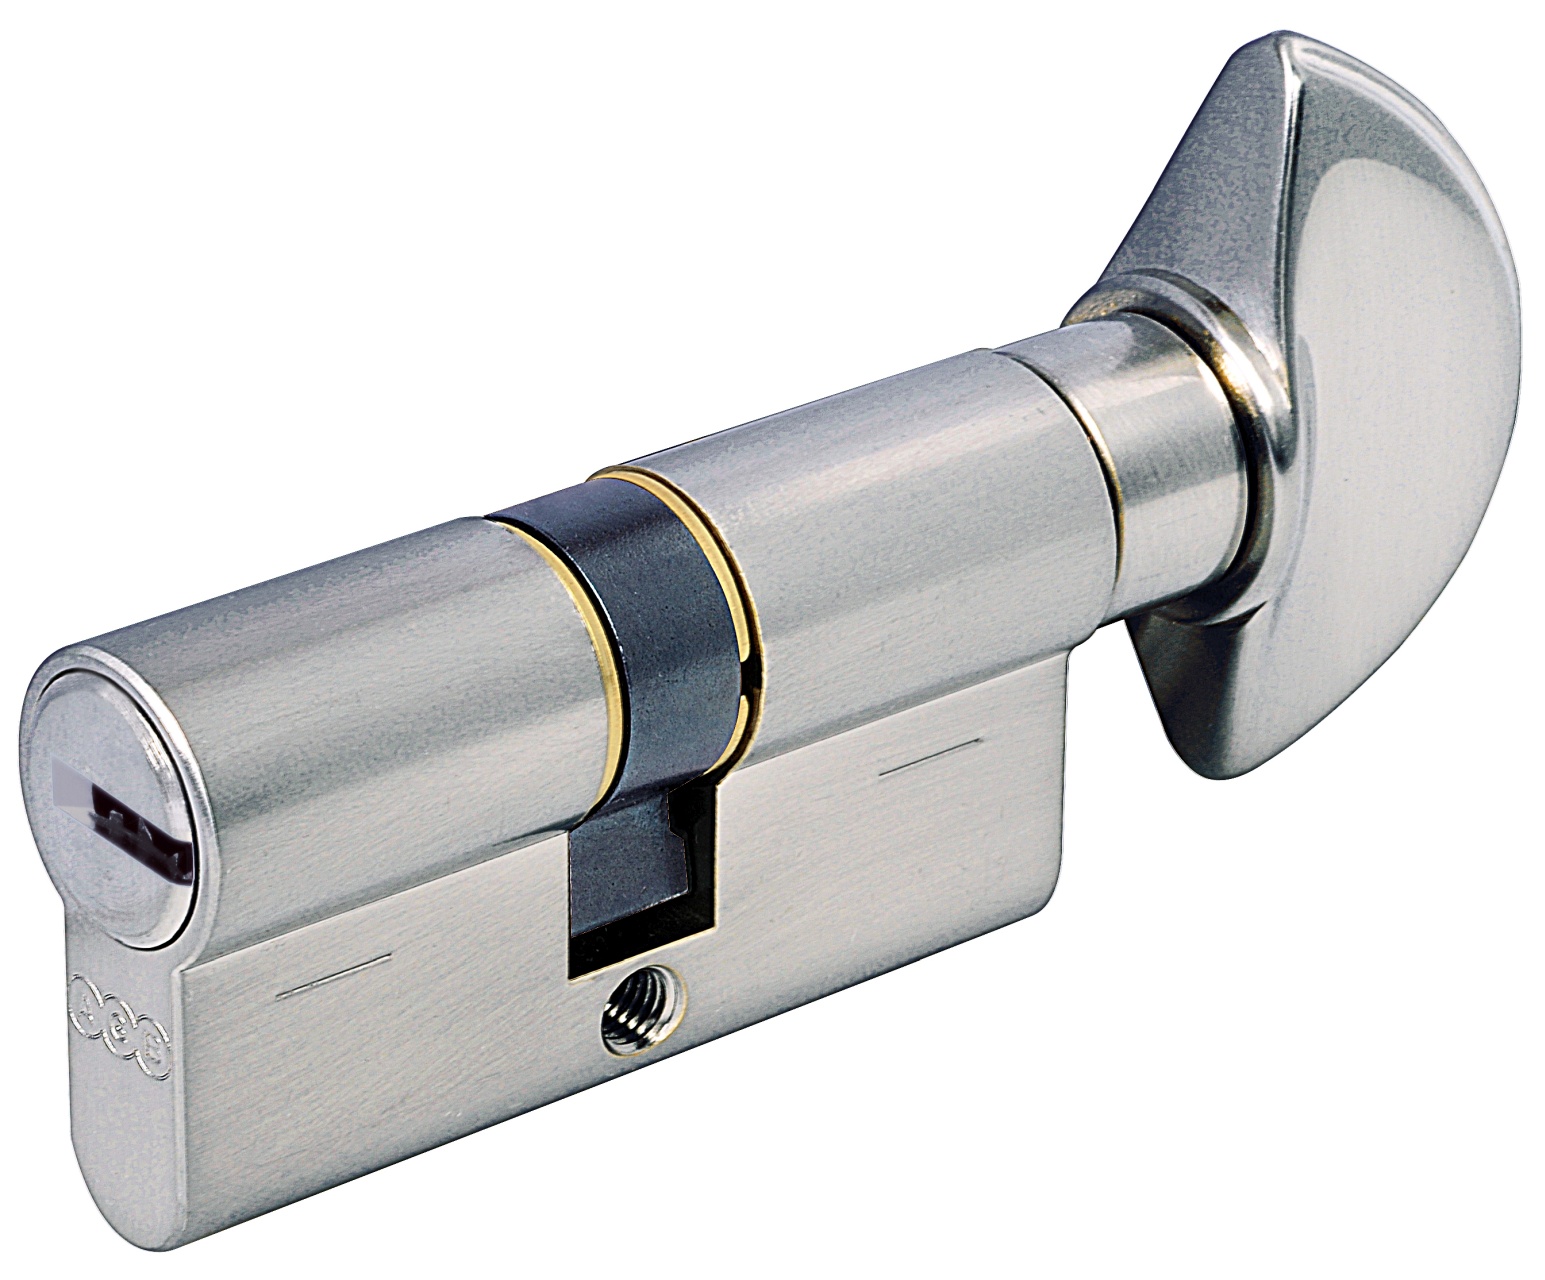 AGB -  Cilindro SCUDO 5000 PS frizionato anti bamping con chiave e pomolo - col. NICHELATO OPACO - lunghezza 100 - misura P-45-10-45